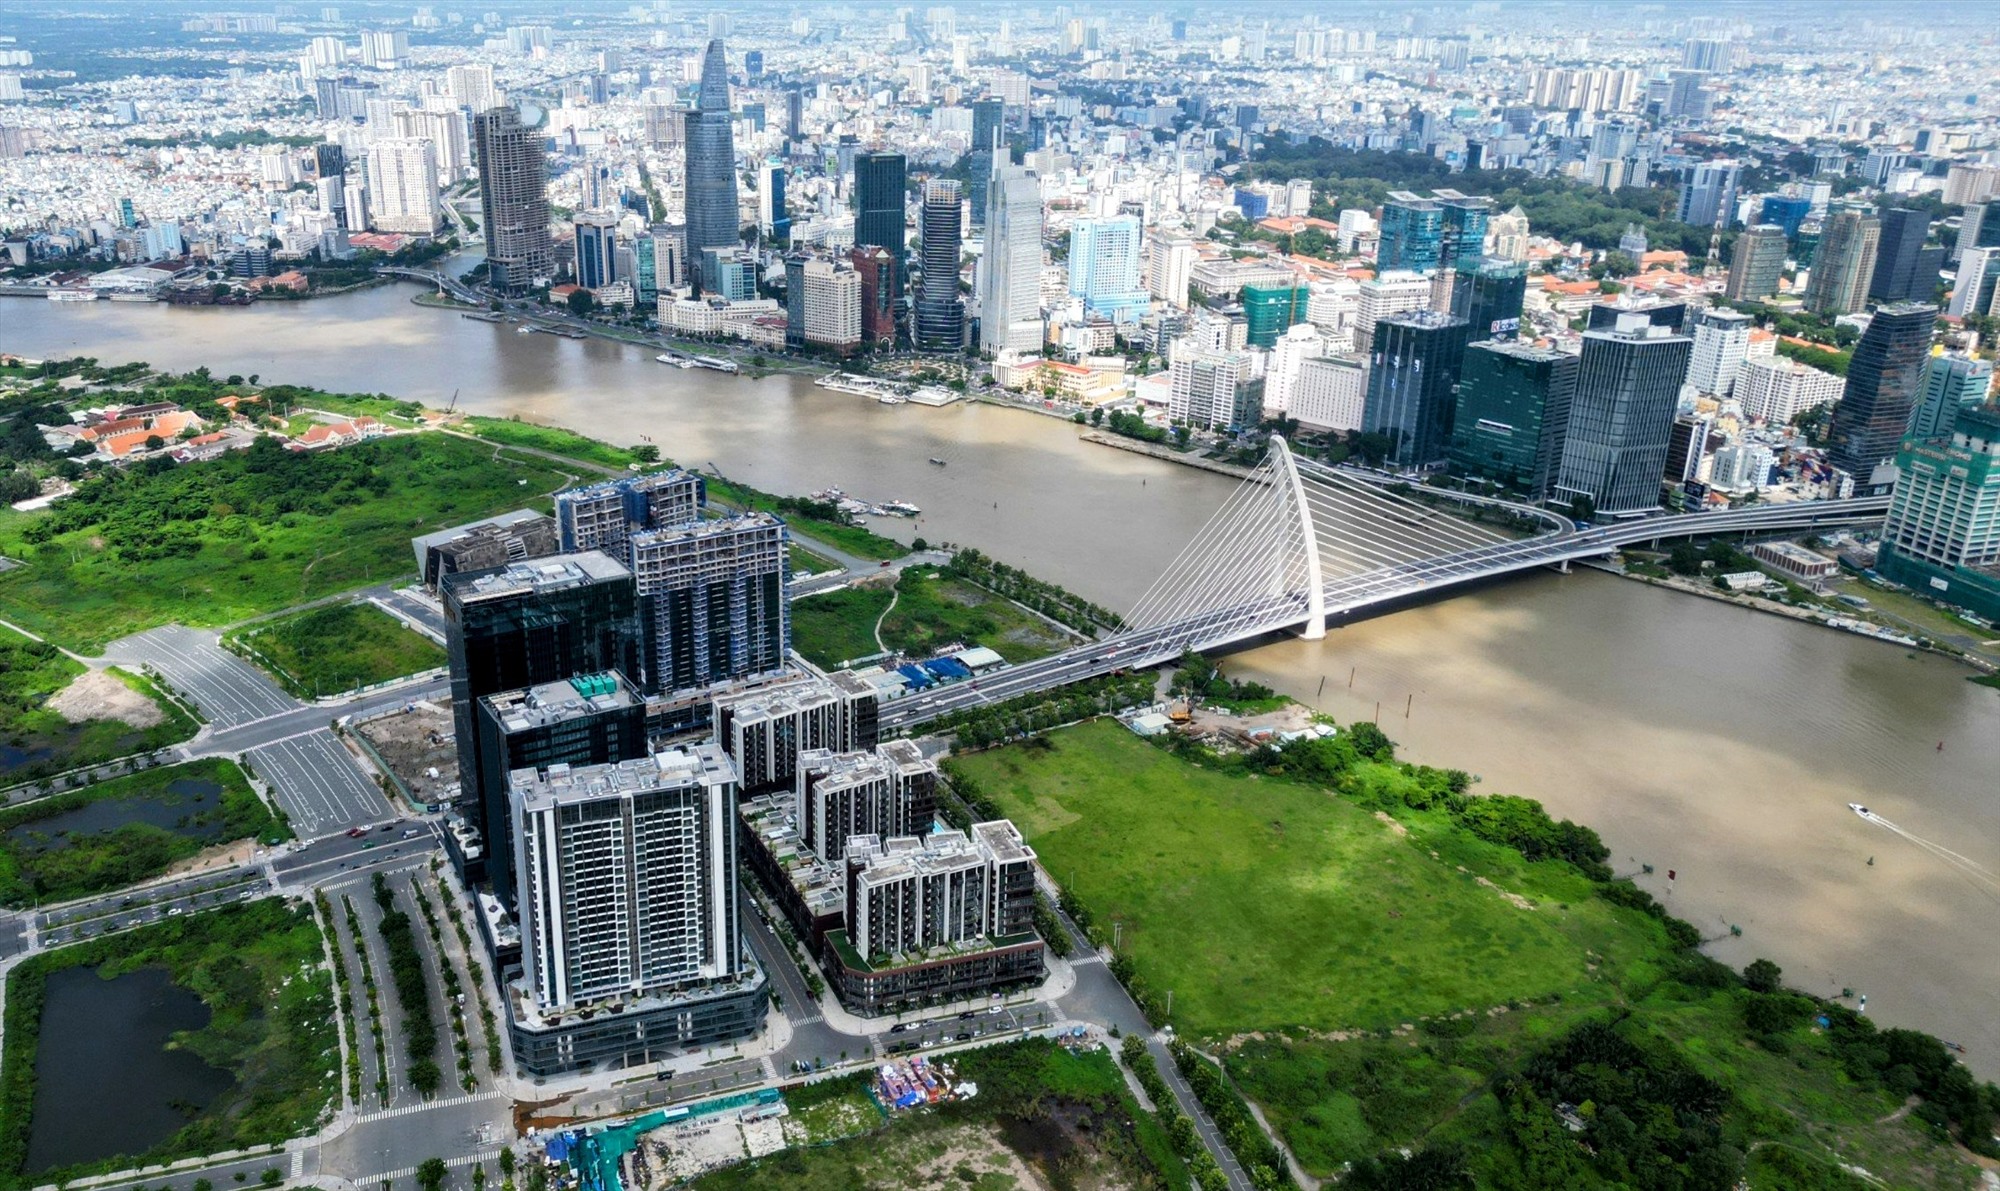  Mới đây, lãnh đạo UBND TPHCM giao TP Thủ Đức phối hợp với các sở ngành nghiên cứu, đề xuất phương án cải tạo, chỉnh trang khu vực bờ sông Sài Gòn phía TP Thủ Đức để cân xứng với cảnh quan bến Bạch Đằng.